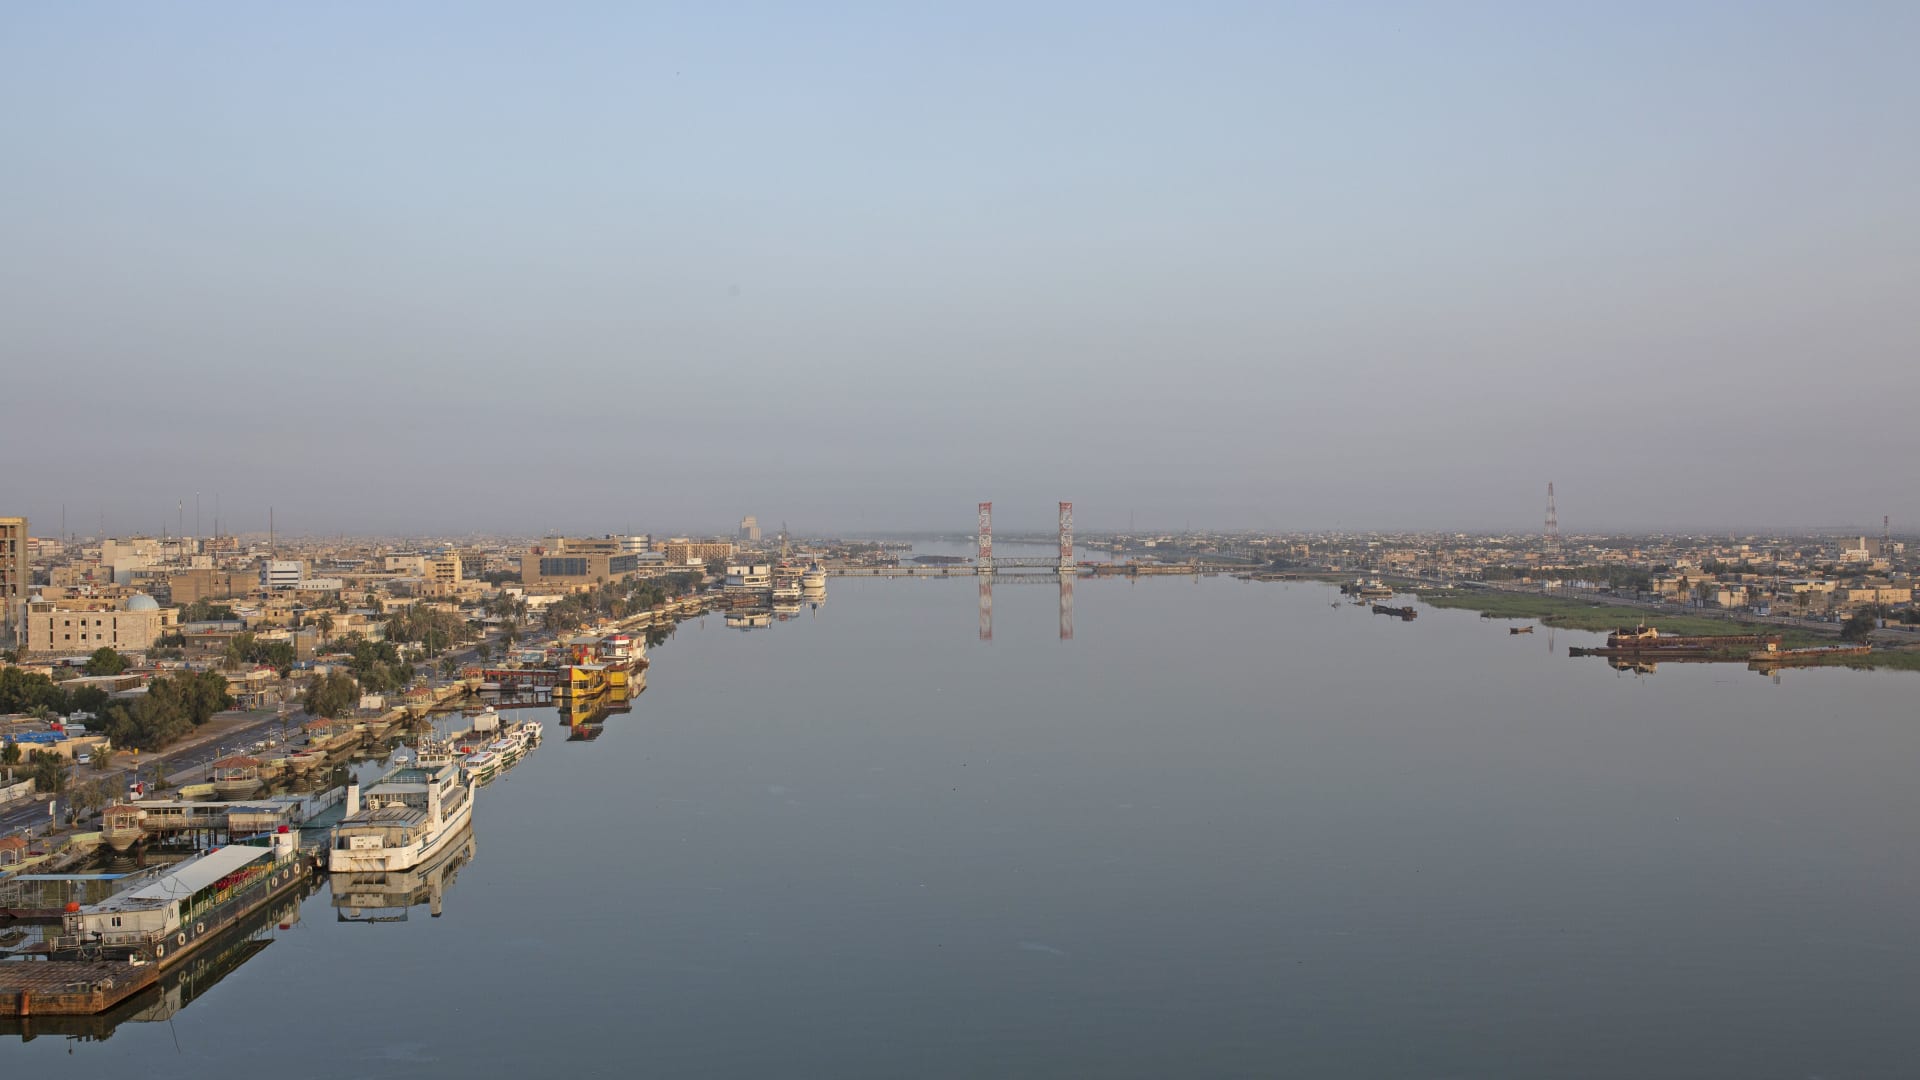 منظر عام يظهر نهر شط العرب في مدينة البصرة جنوب العراق